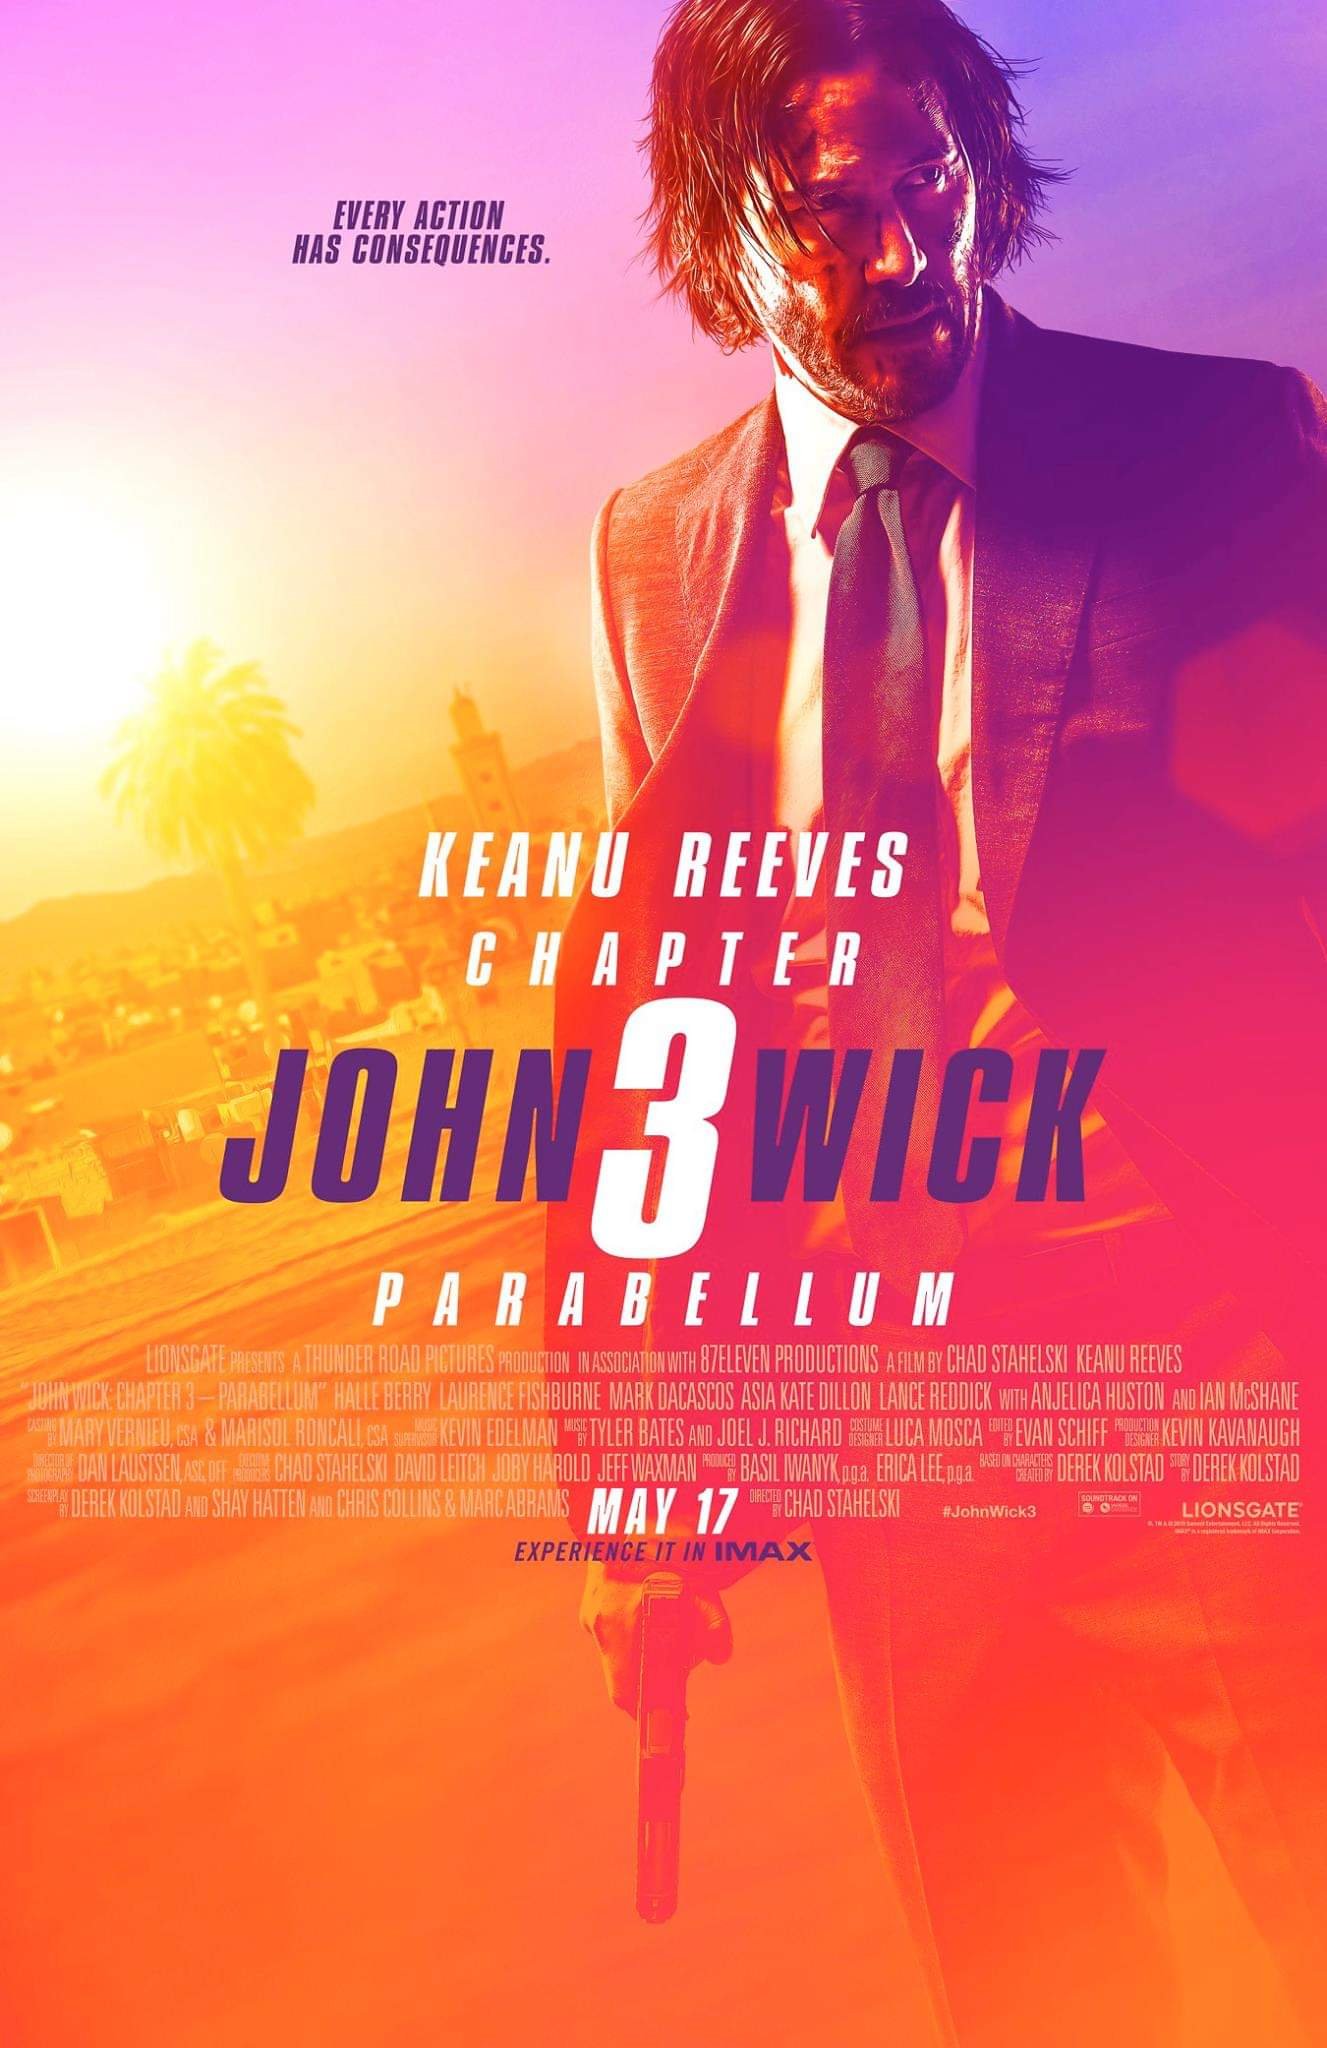 殺神John Wick 3 (4DX版)電影圖片 - FB_IMG_1553202849821_1553219739.jpg